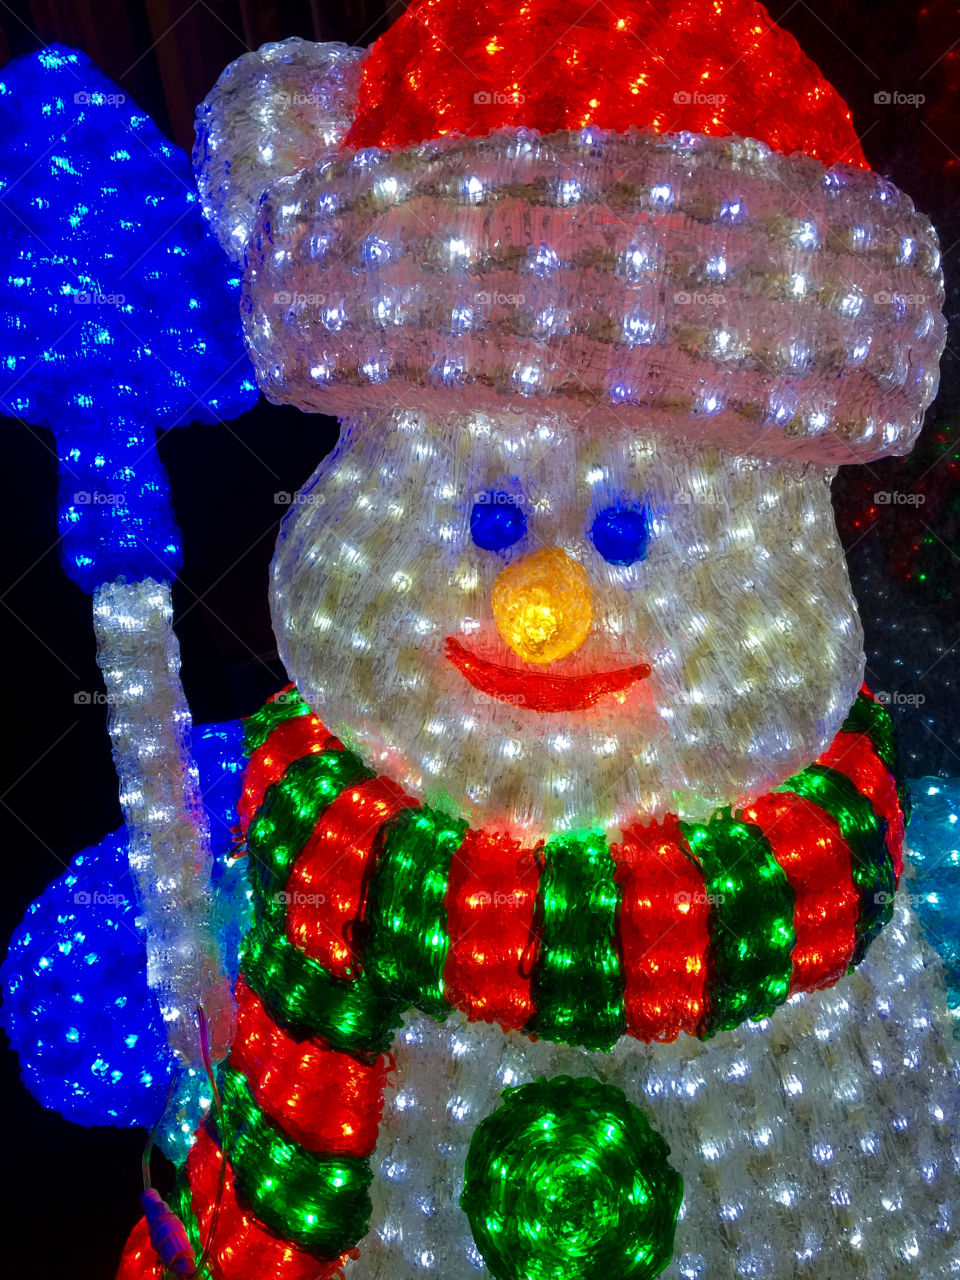 Electric snowman